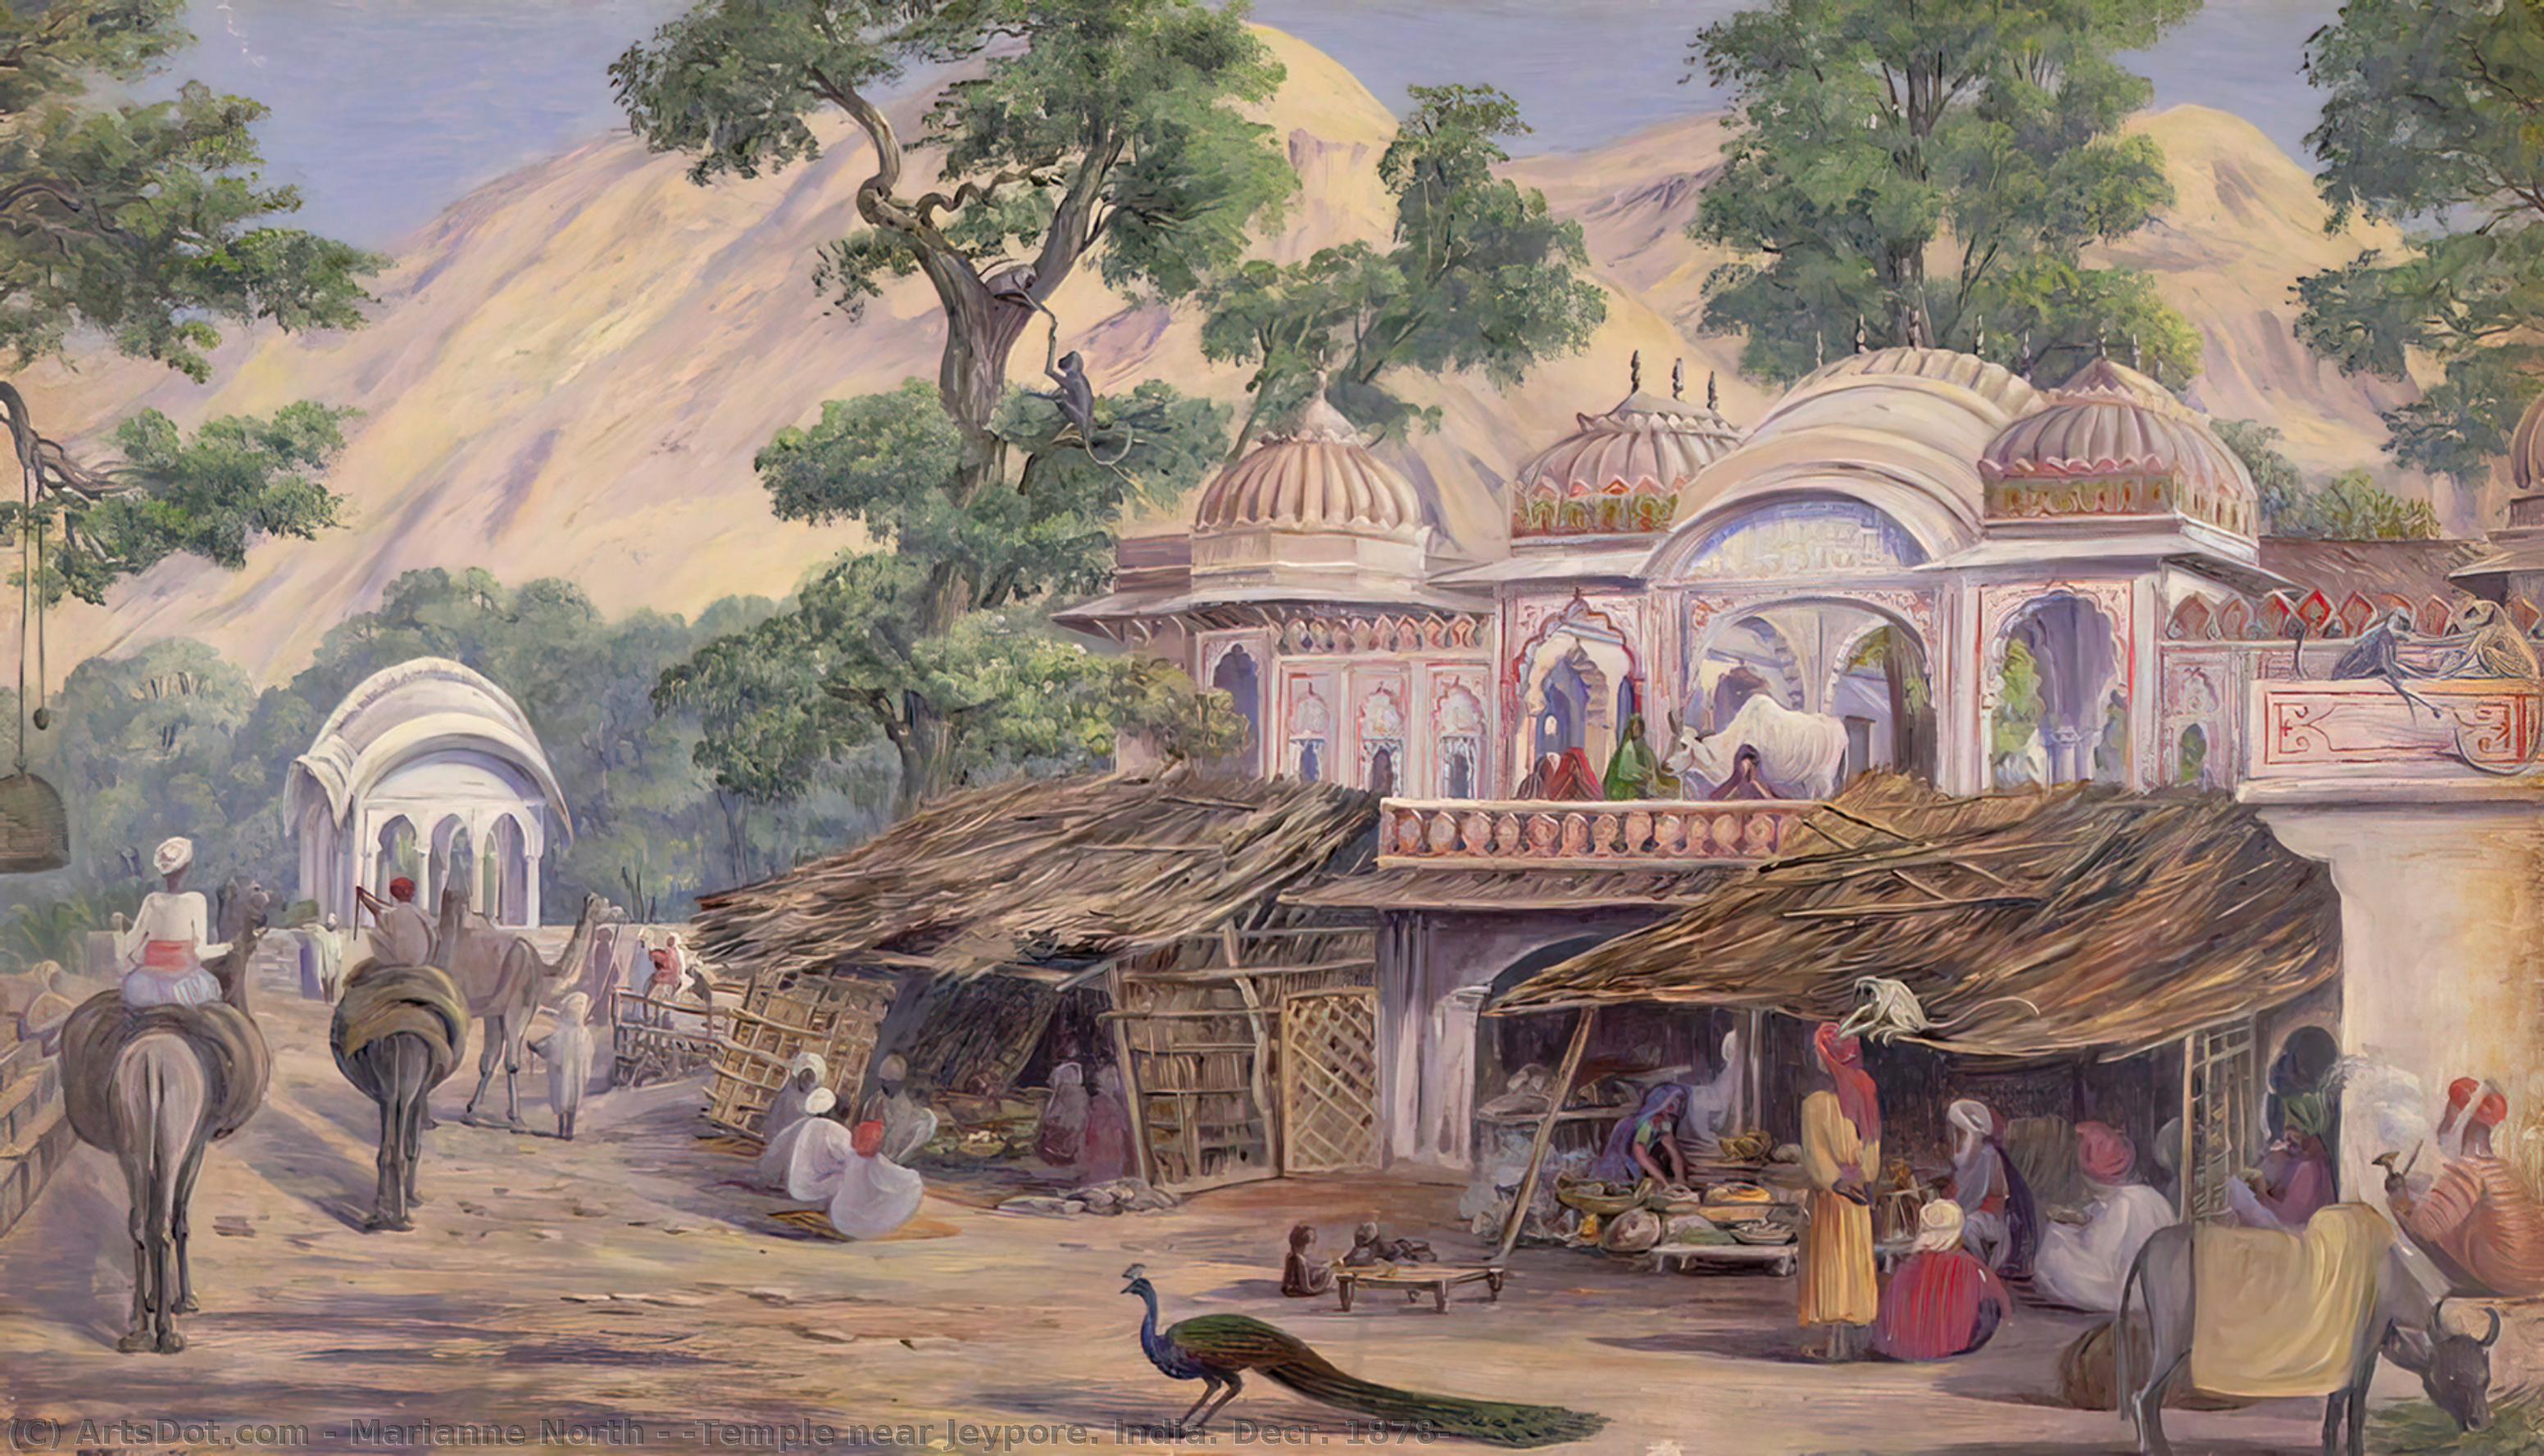 顺序 藝術再現 `Temple near Jeypore。 印度。 Decr. 1878 页: 1, 1878 通过 Marianne North (1830-1890, United Kingdom) | ArtsDot.com